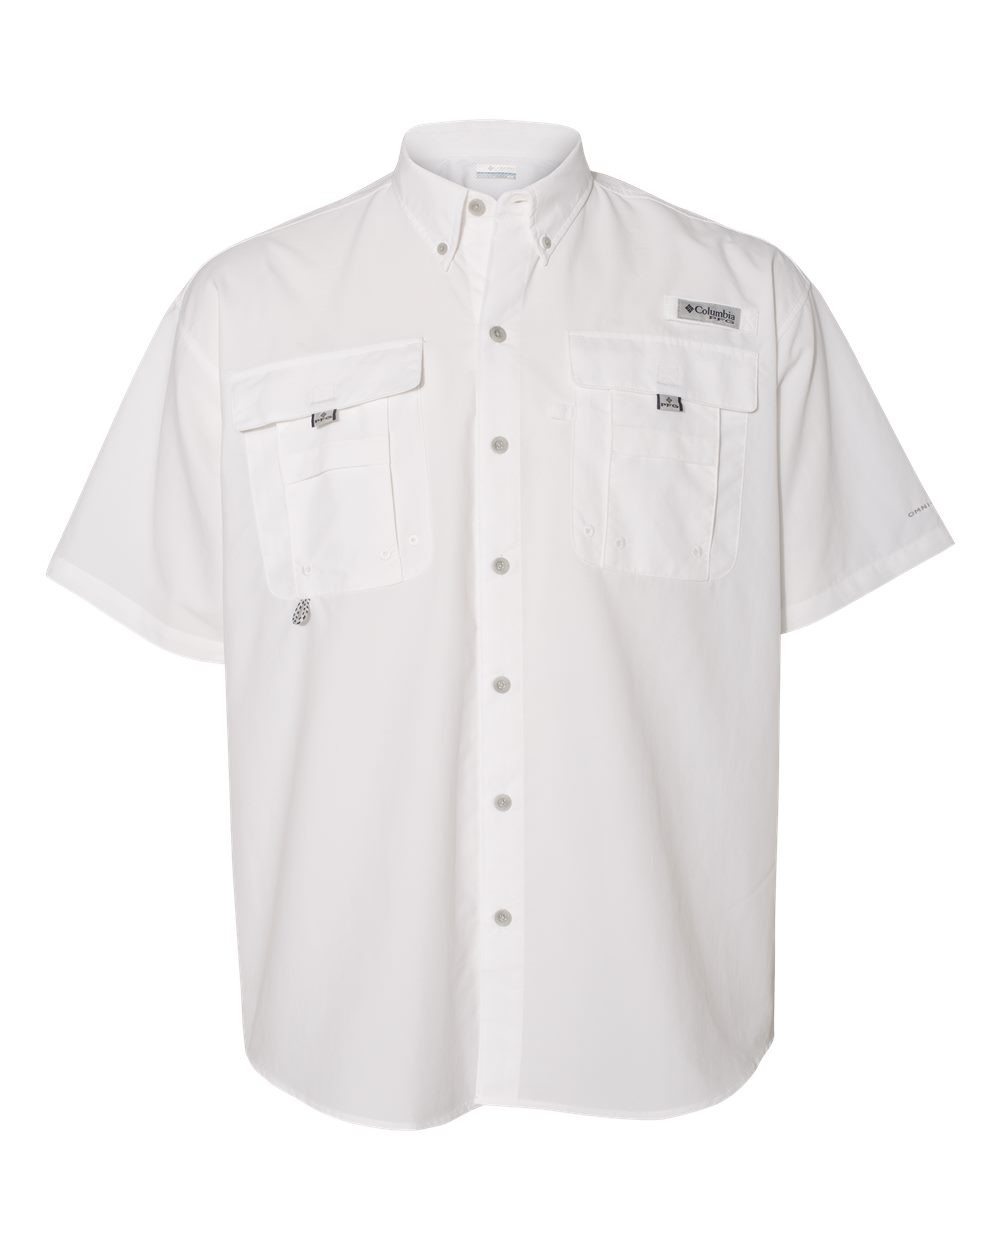 PFG Bahama™ II Short Sleeve Shirt-Columbia